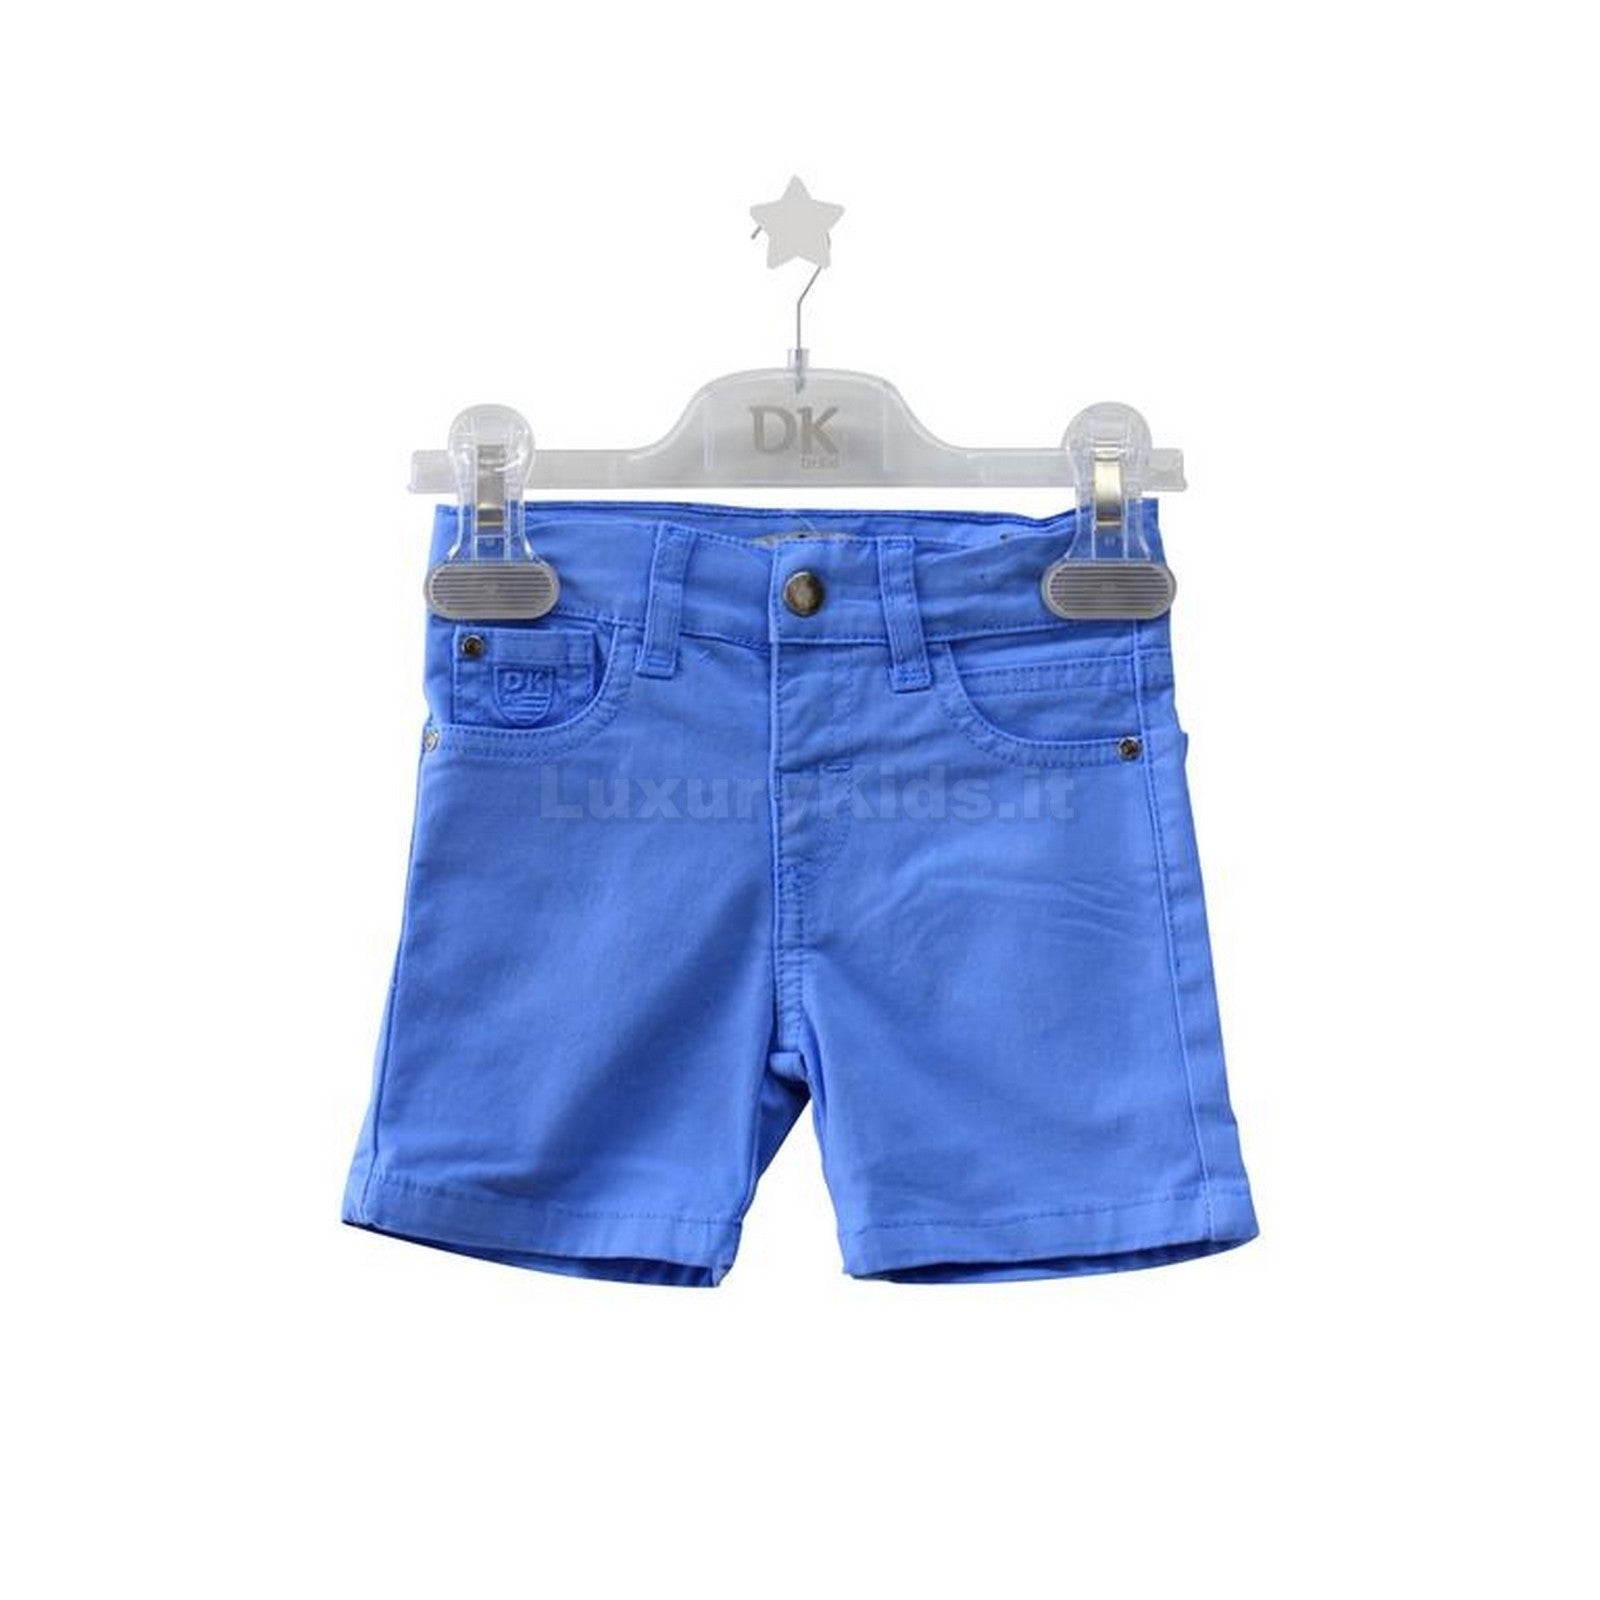 Bermuda Effetto Jeans Turchese Neonato 505 Dr.kids - DR.KID - LuxuryKids